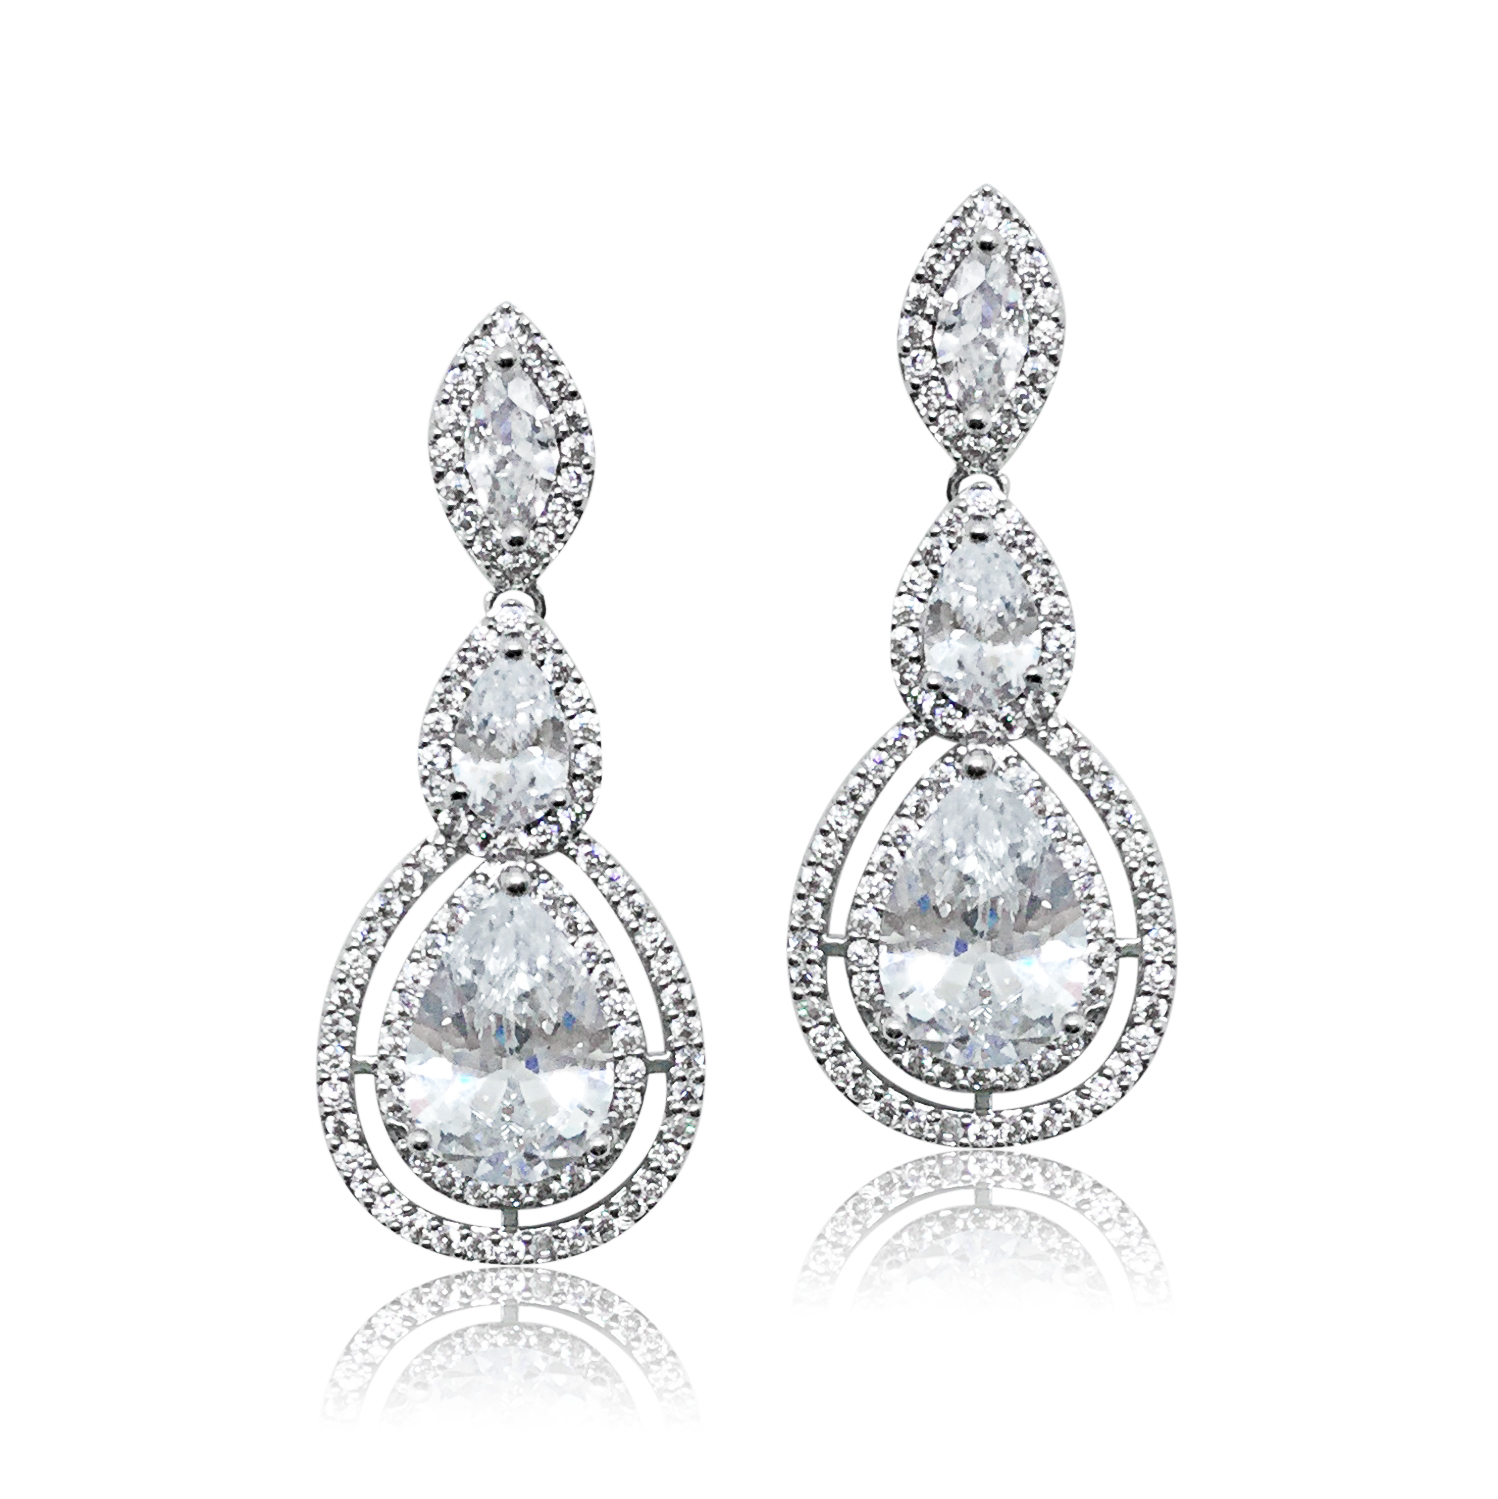 Diamond Drop Earrings|Kenzie|Jeanette Maree|Shop Online